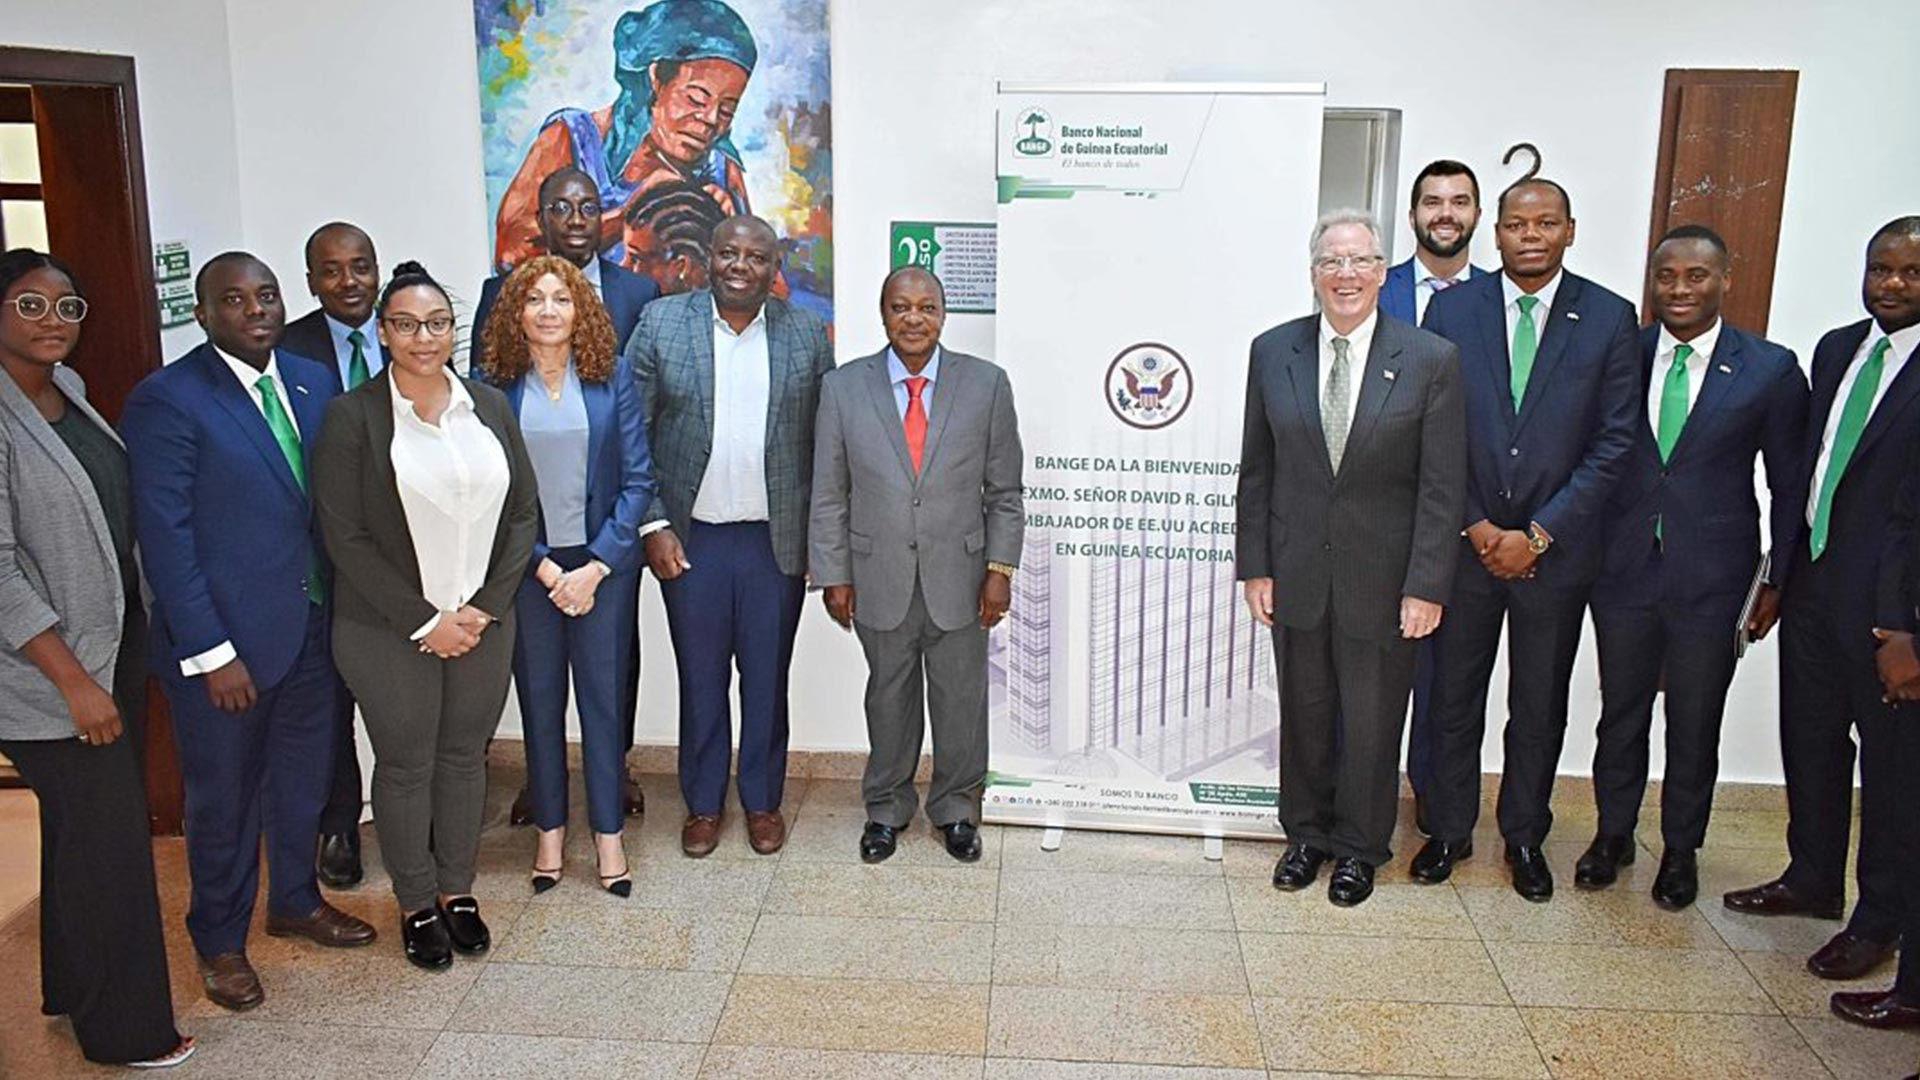 El Embajador de EE.UU en Guinea Ecuatorial felicita al BANGE por los logros cosechados en los últimos años